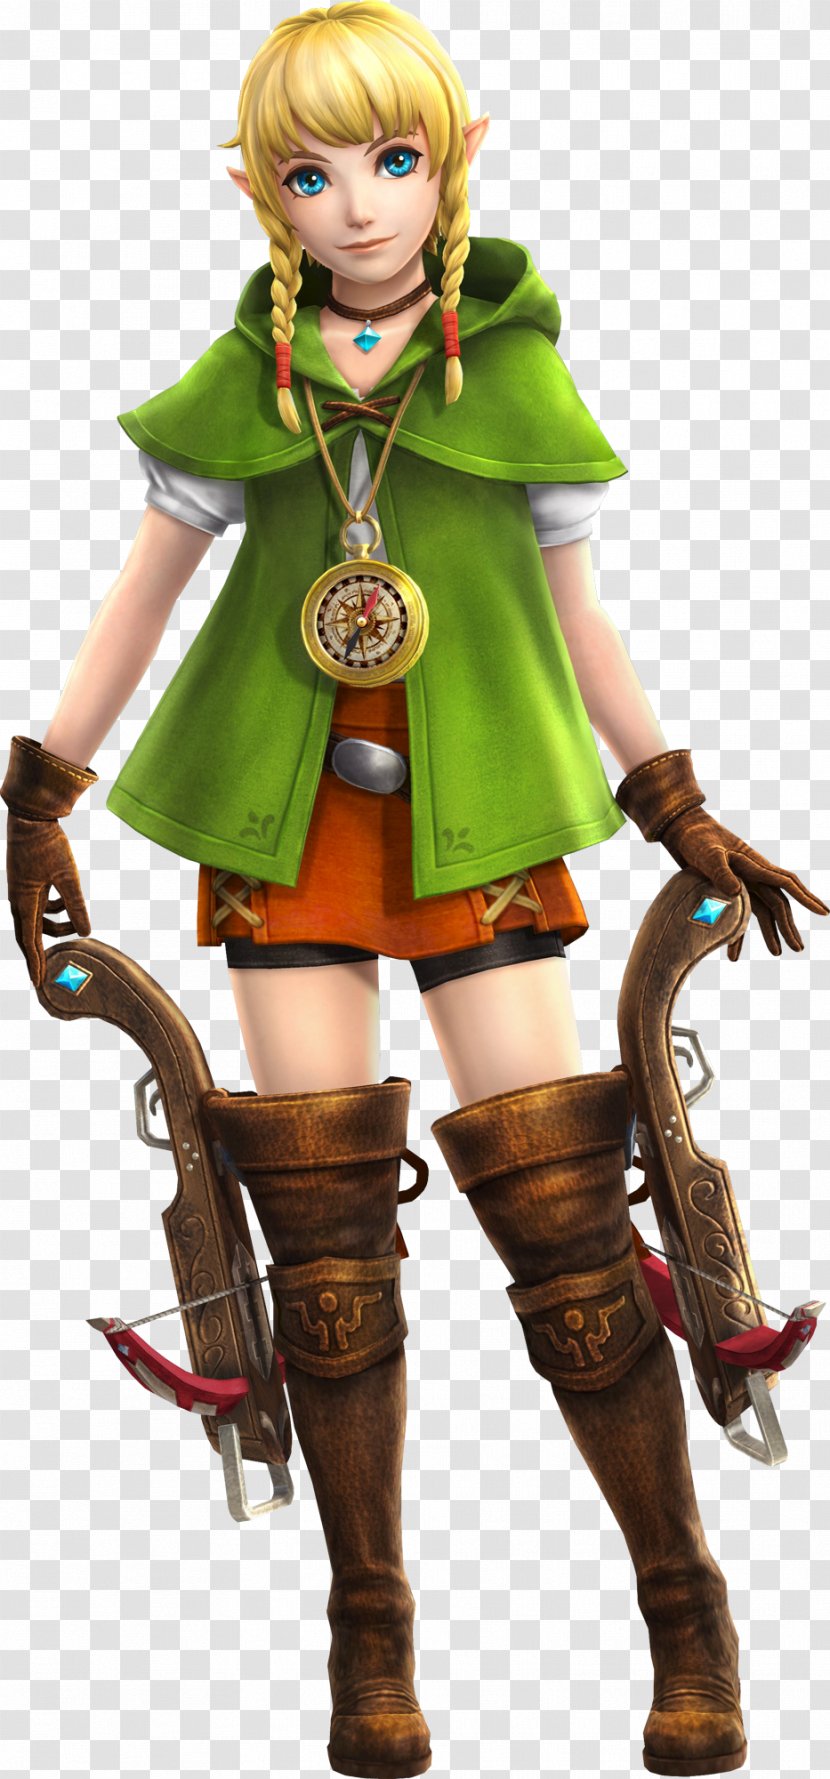 Hyrule Warriors The Legend Of Zelda: Wind Waker Breath Wild Majora's Mask Princess Zelda - Silhouette - Link Transparent PNG